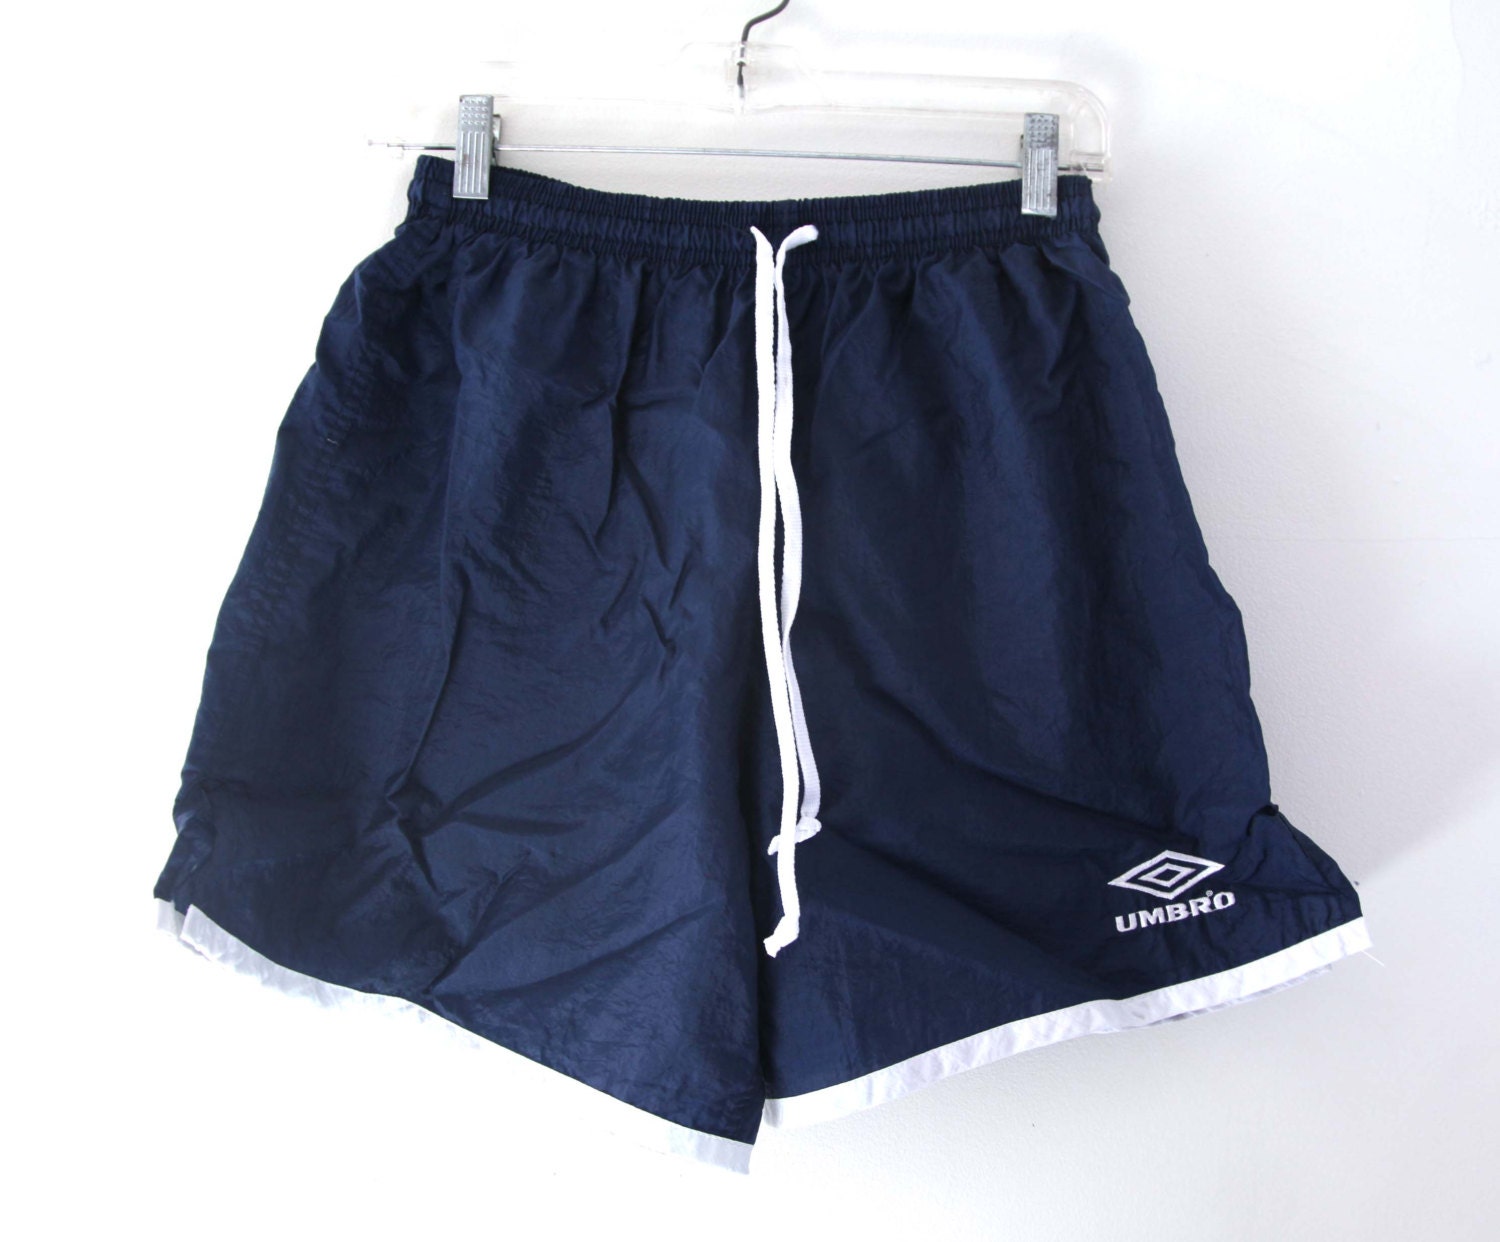 umbra soccer shorts